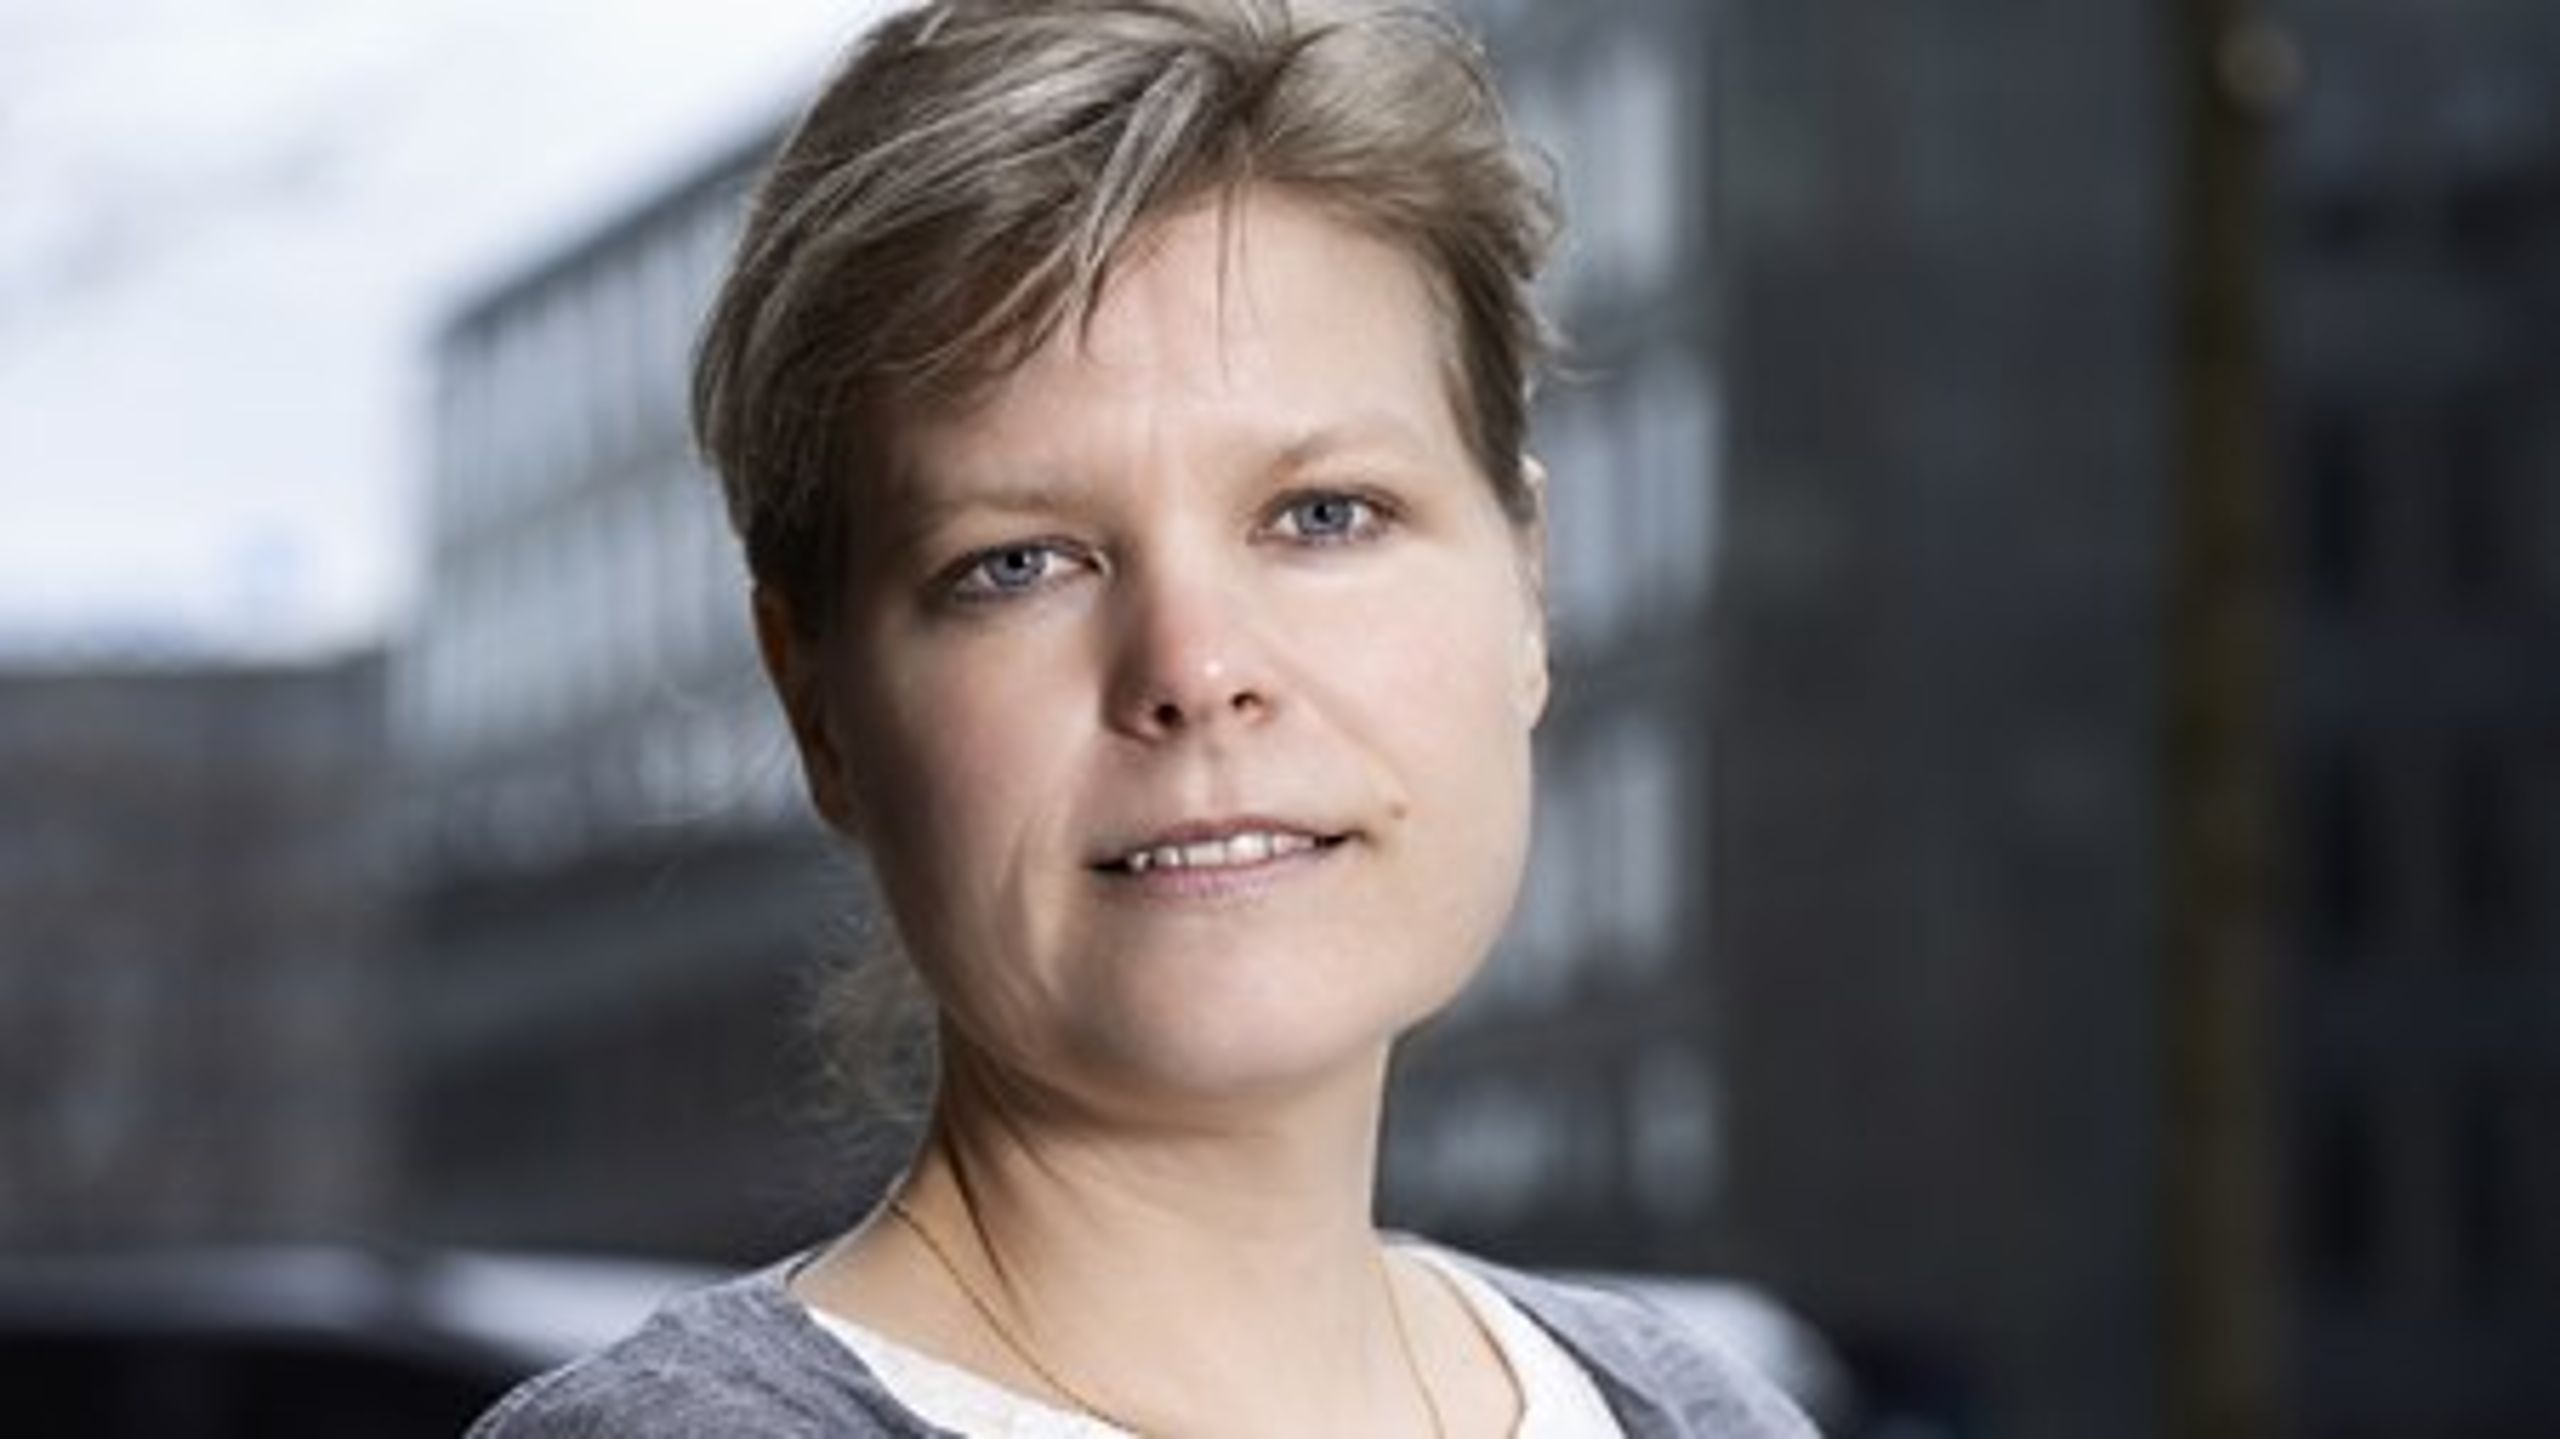 Detailhandlen konkurrerer også om at tilbyde&nbsp;sunde varer, skriver Lotte Engbæk Larsen, markedschef i Dansk Erhverv.&nbsp;